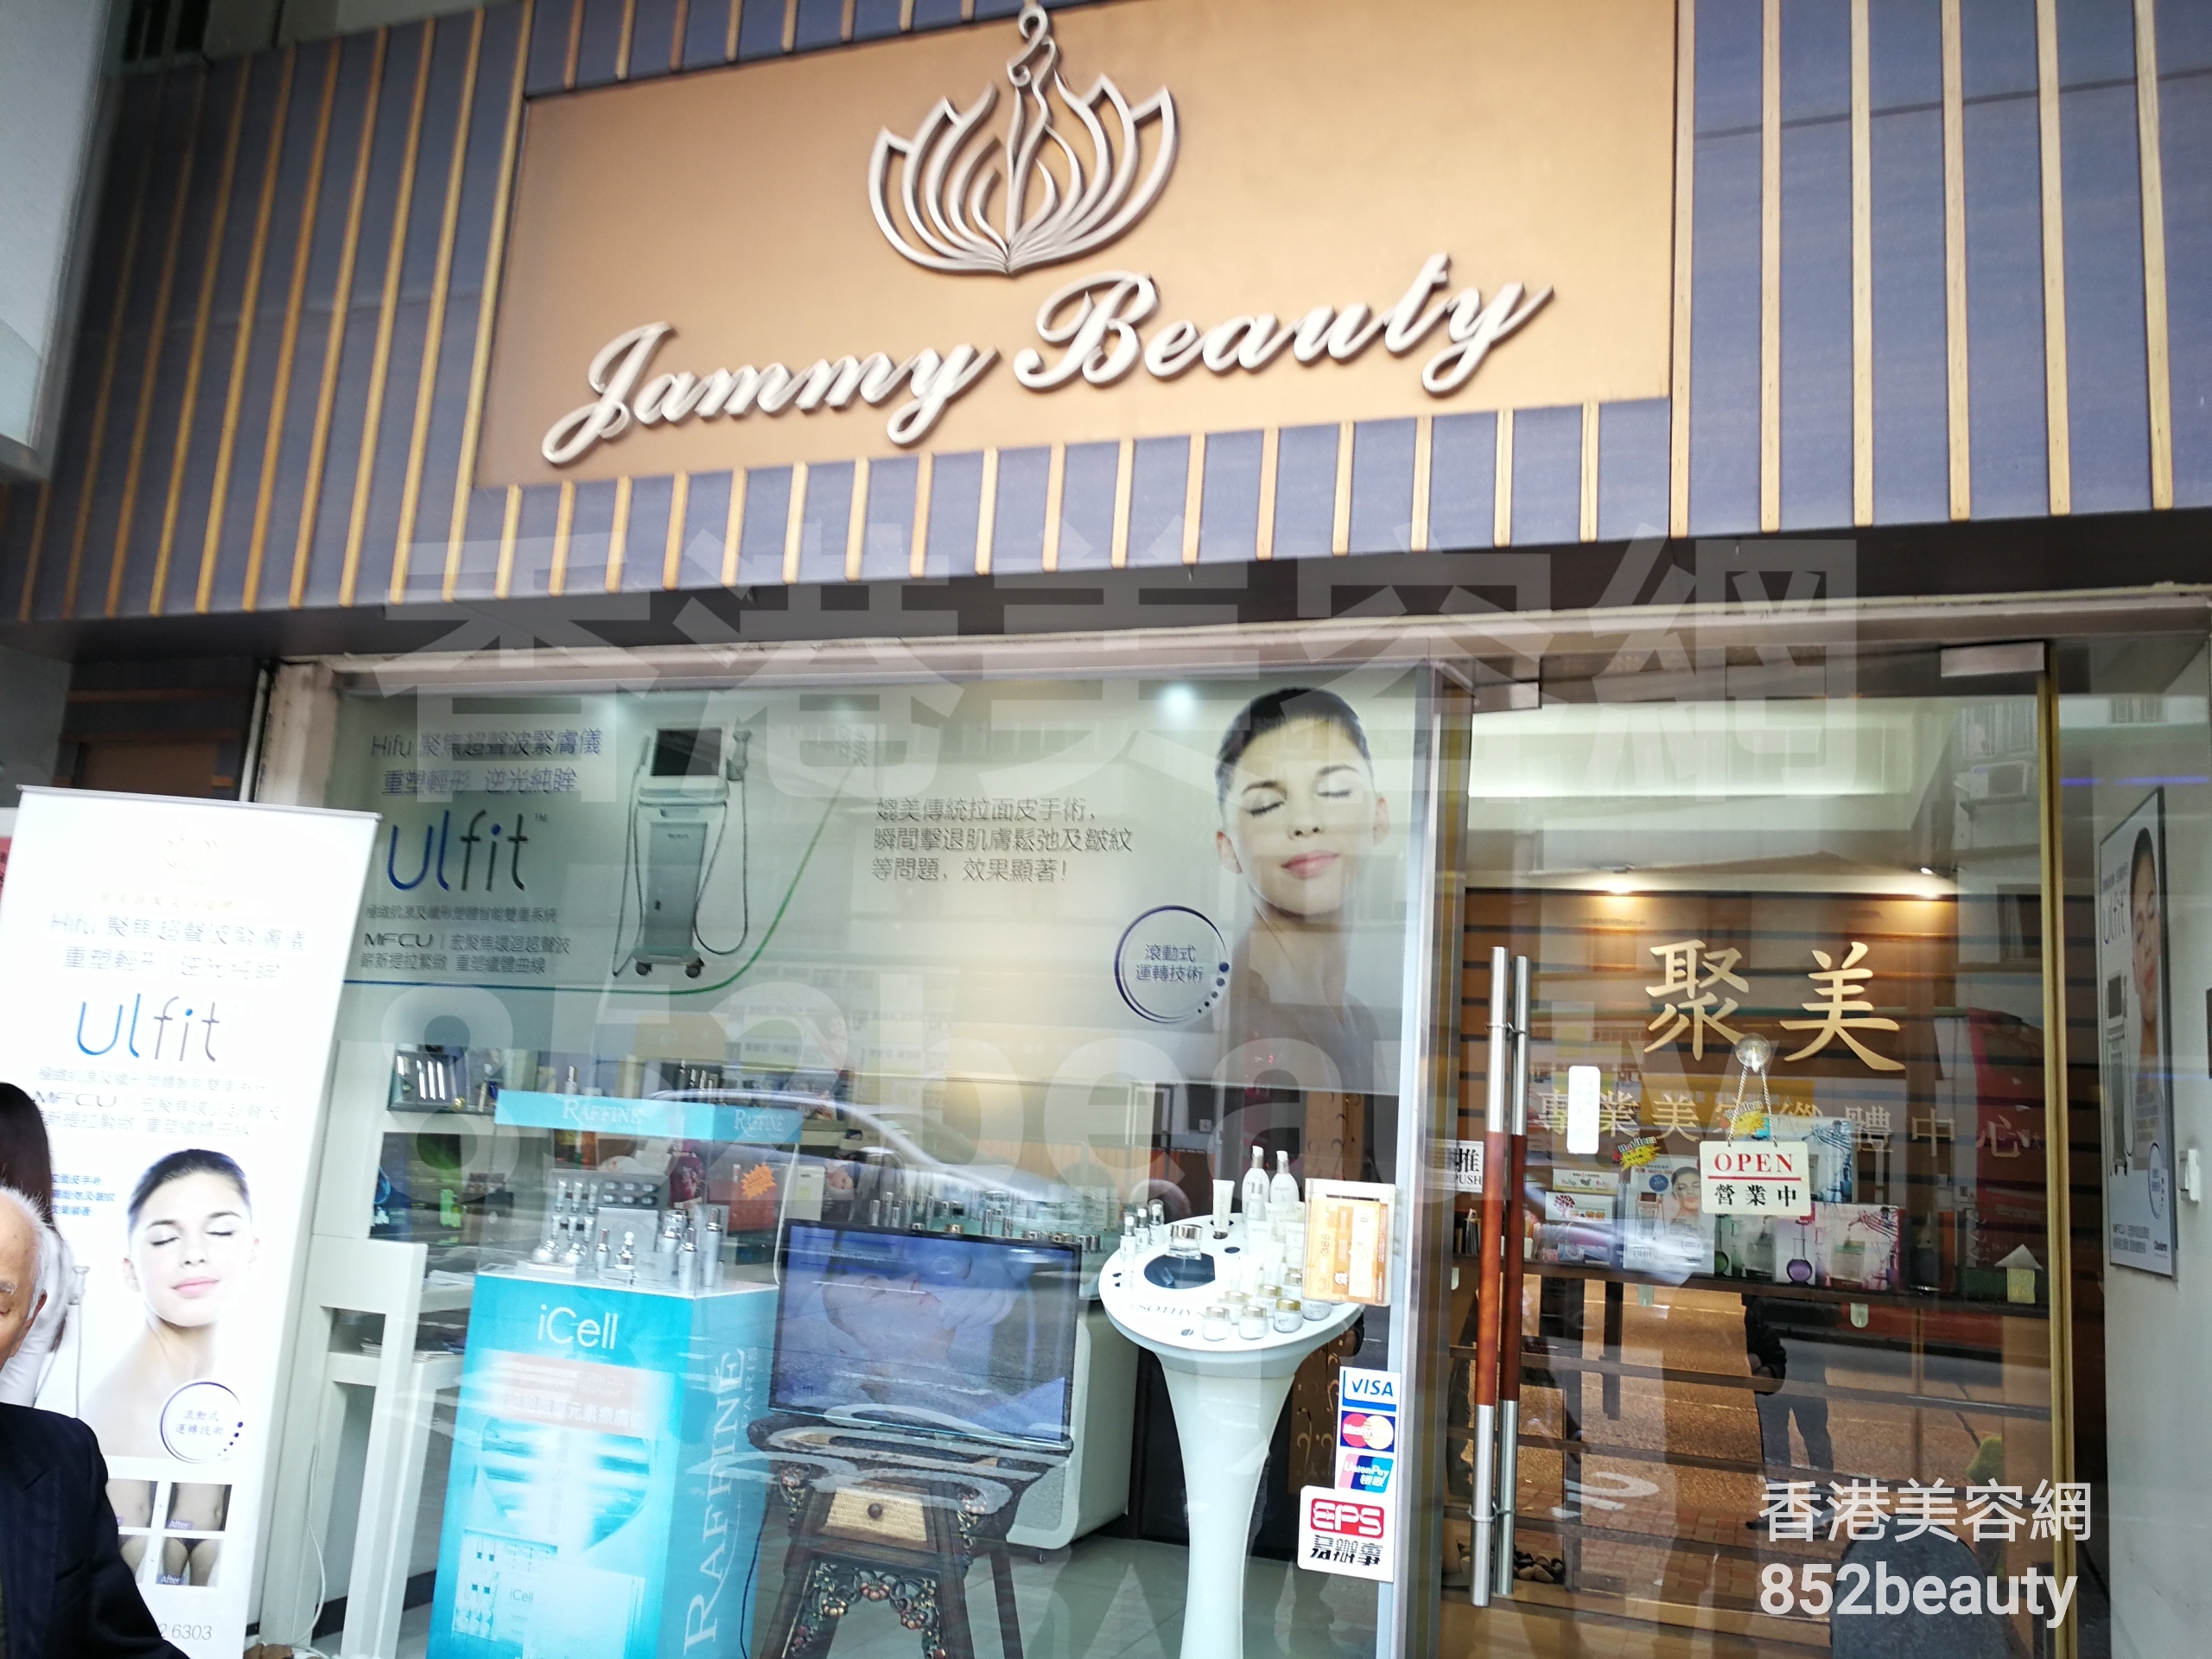 香港美容網 Hong Kong Beauty Salon 美容院 / 美容師: Jammy beauty house 聚美專業美容纖體中心